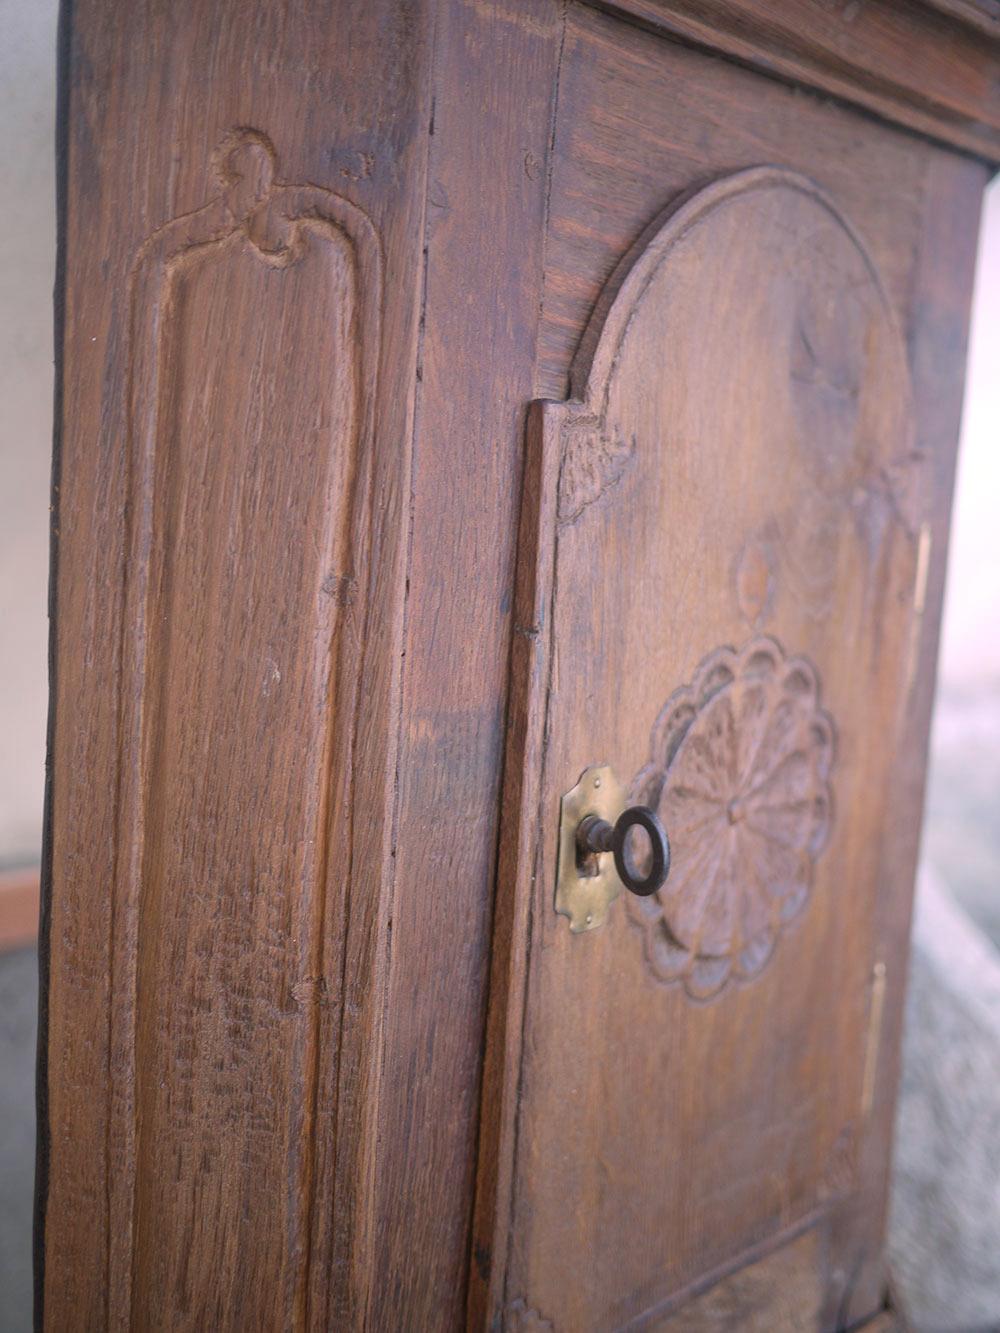 Eckiger Hängeschrank von 1700 aus Eiche

Maße: H.78 - L. 48 - S. 28

Besonderer Schrank, komplett aus Eichenholz gebaut, mit einer Ecktür.
An der Tür ist eine Rosette geschnitzt, und der gesamte untere Teil ist schön geformt und